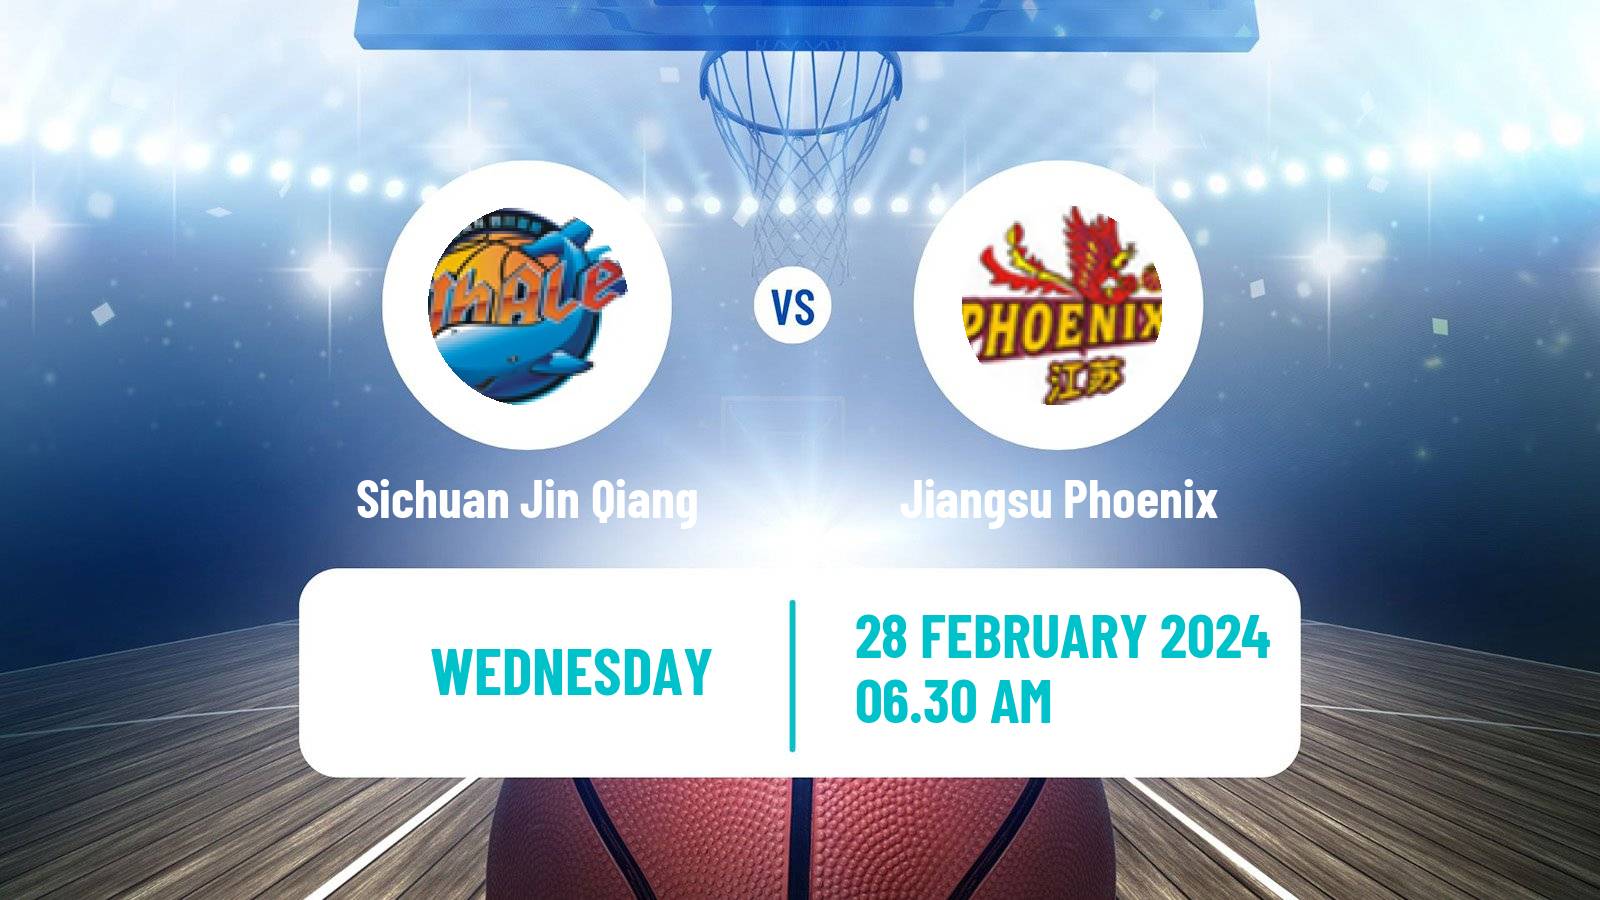 Basketball WCBA Sichuan Jin Qiang - Jiangsu Phoenix